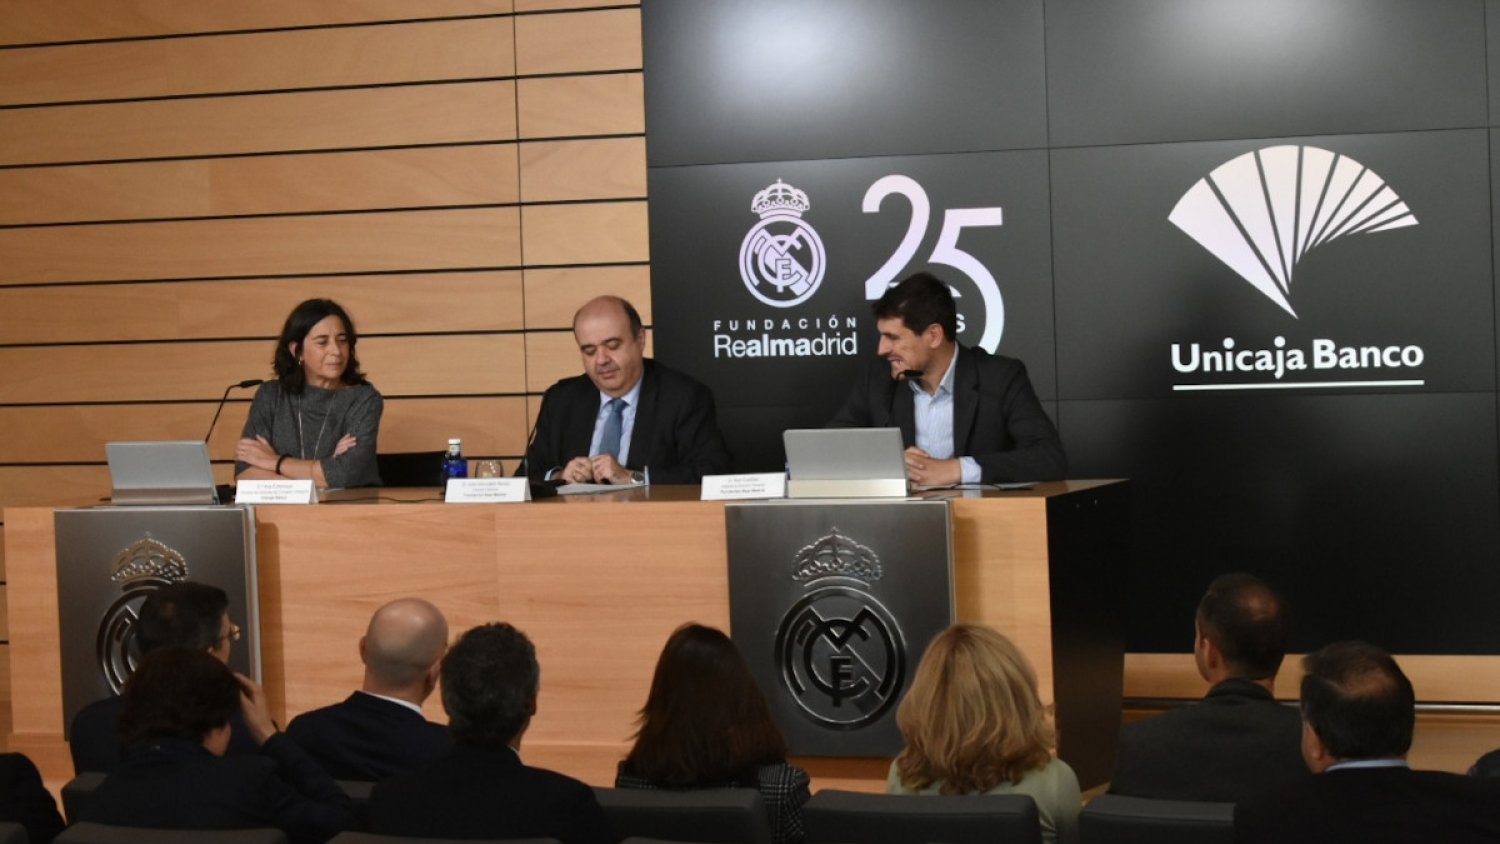 Unicaja Banco colabora con la Fundación Real Madrid apostando por la integración a través del deporte